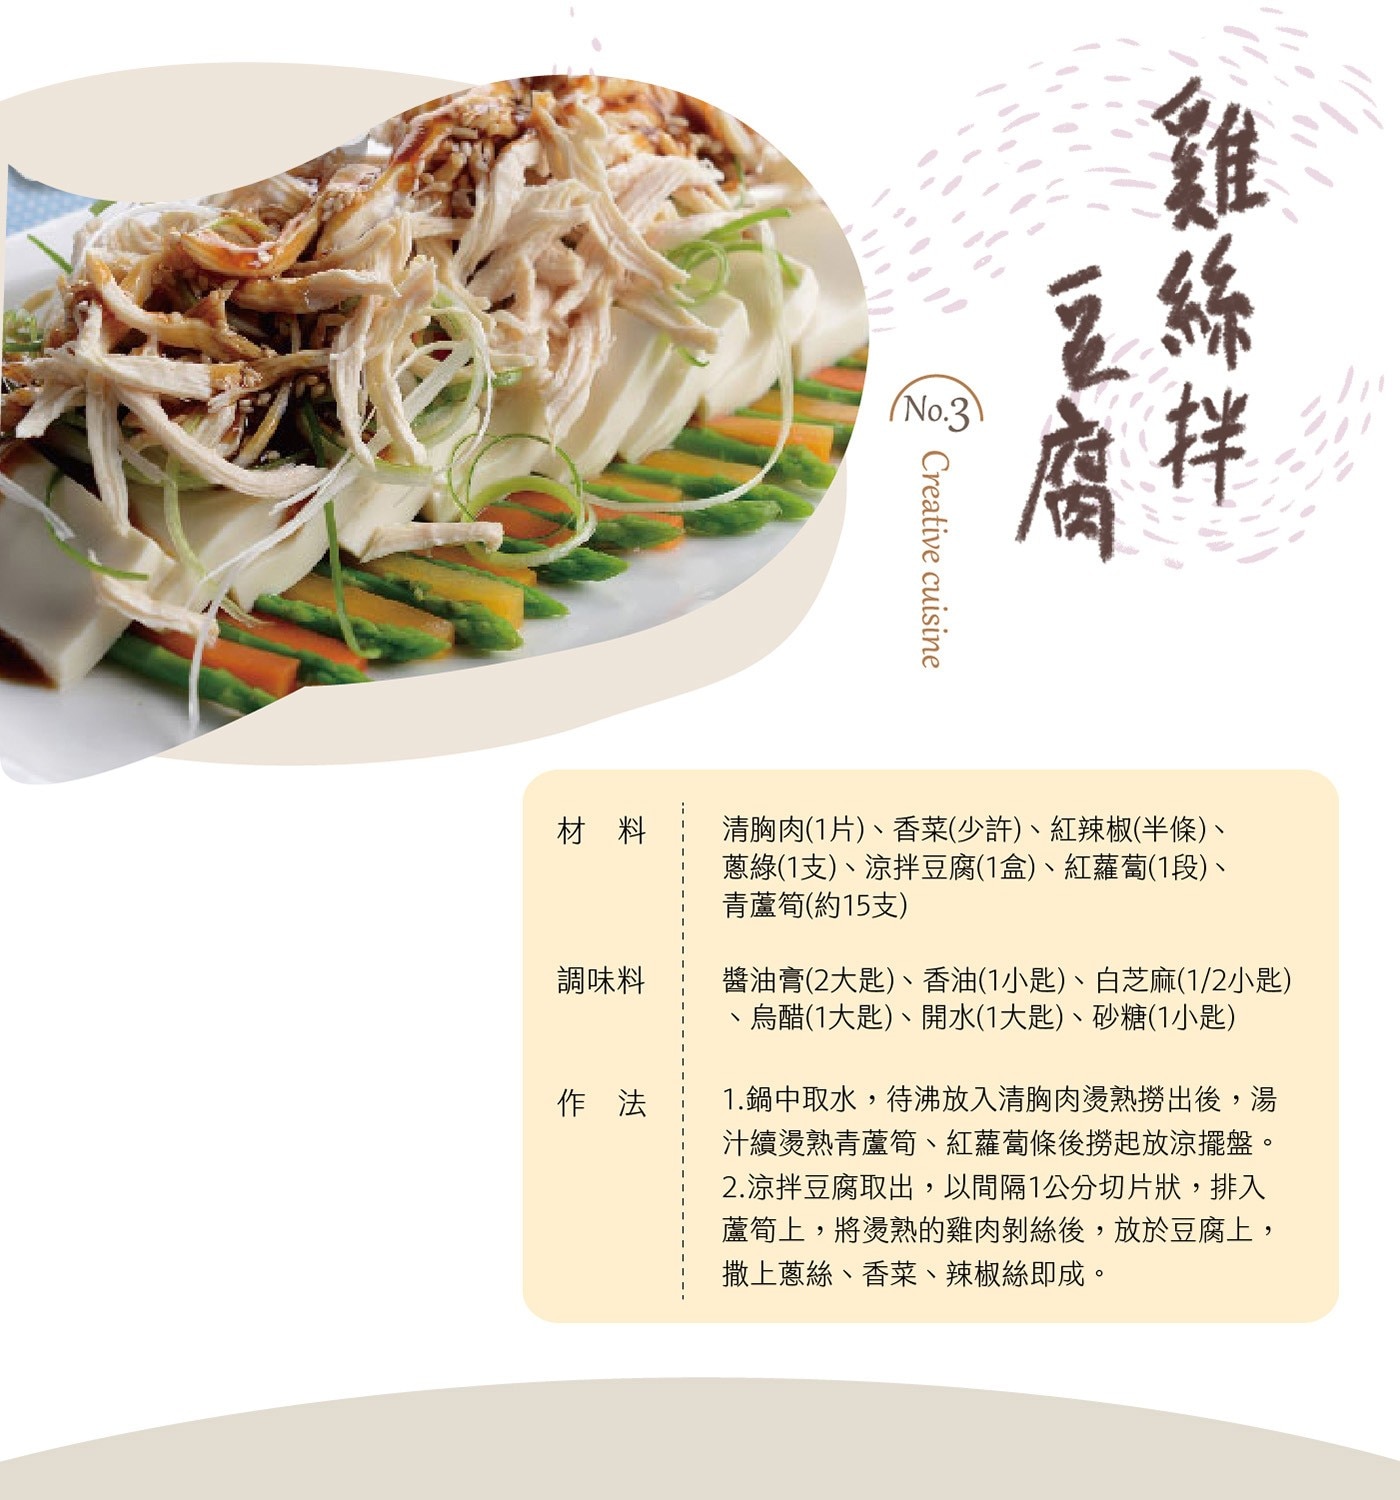 大成 台灣冷凍雞清胸肉 創意料理 雞絲拌豆腐